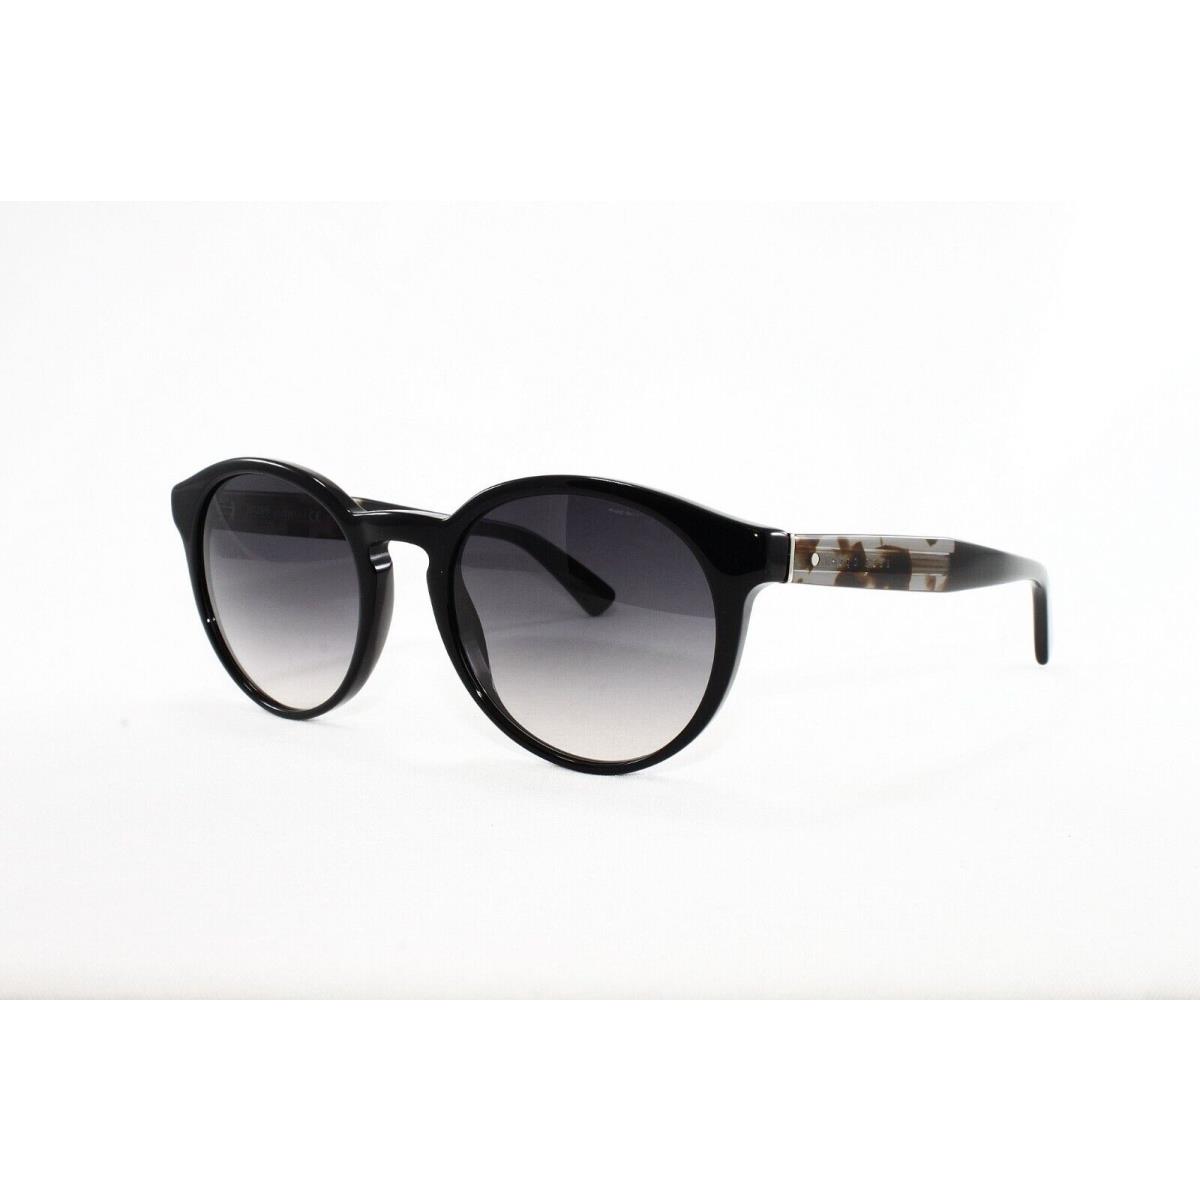 Hugo Boss sunglasses  - Black Frame, Gray Lens